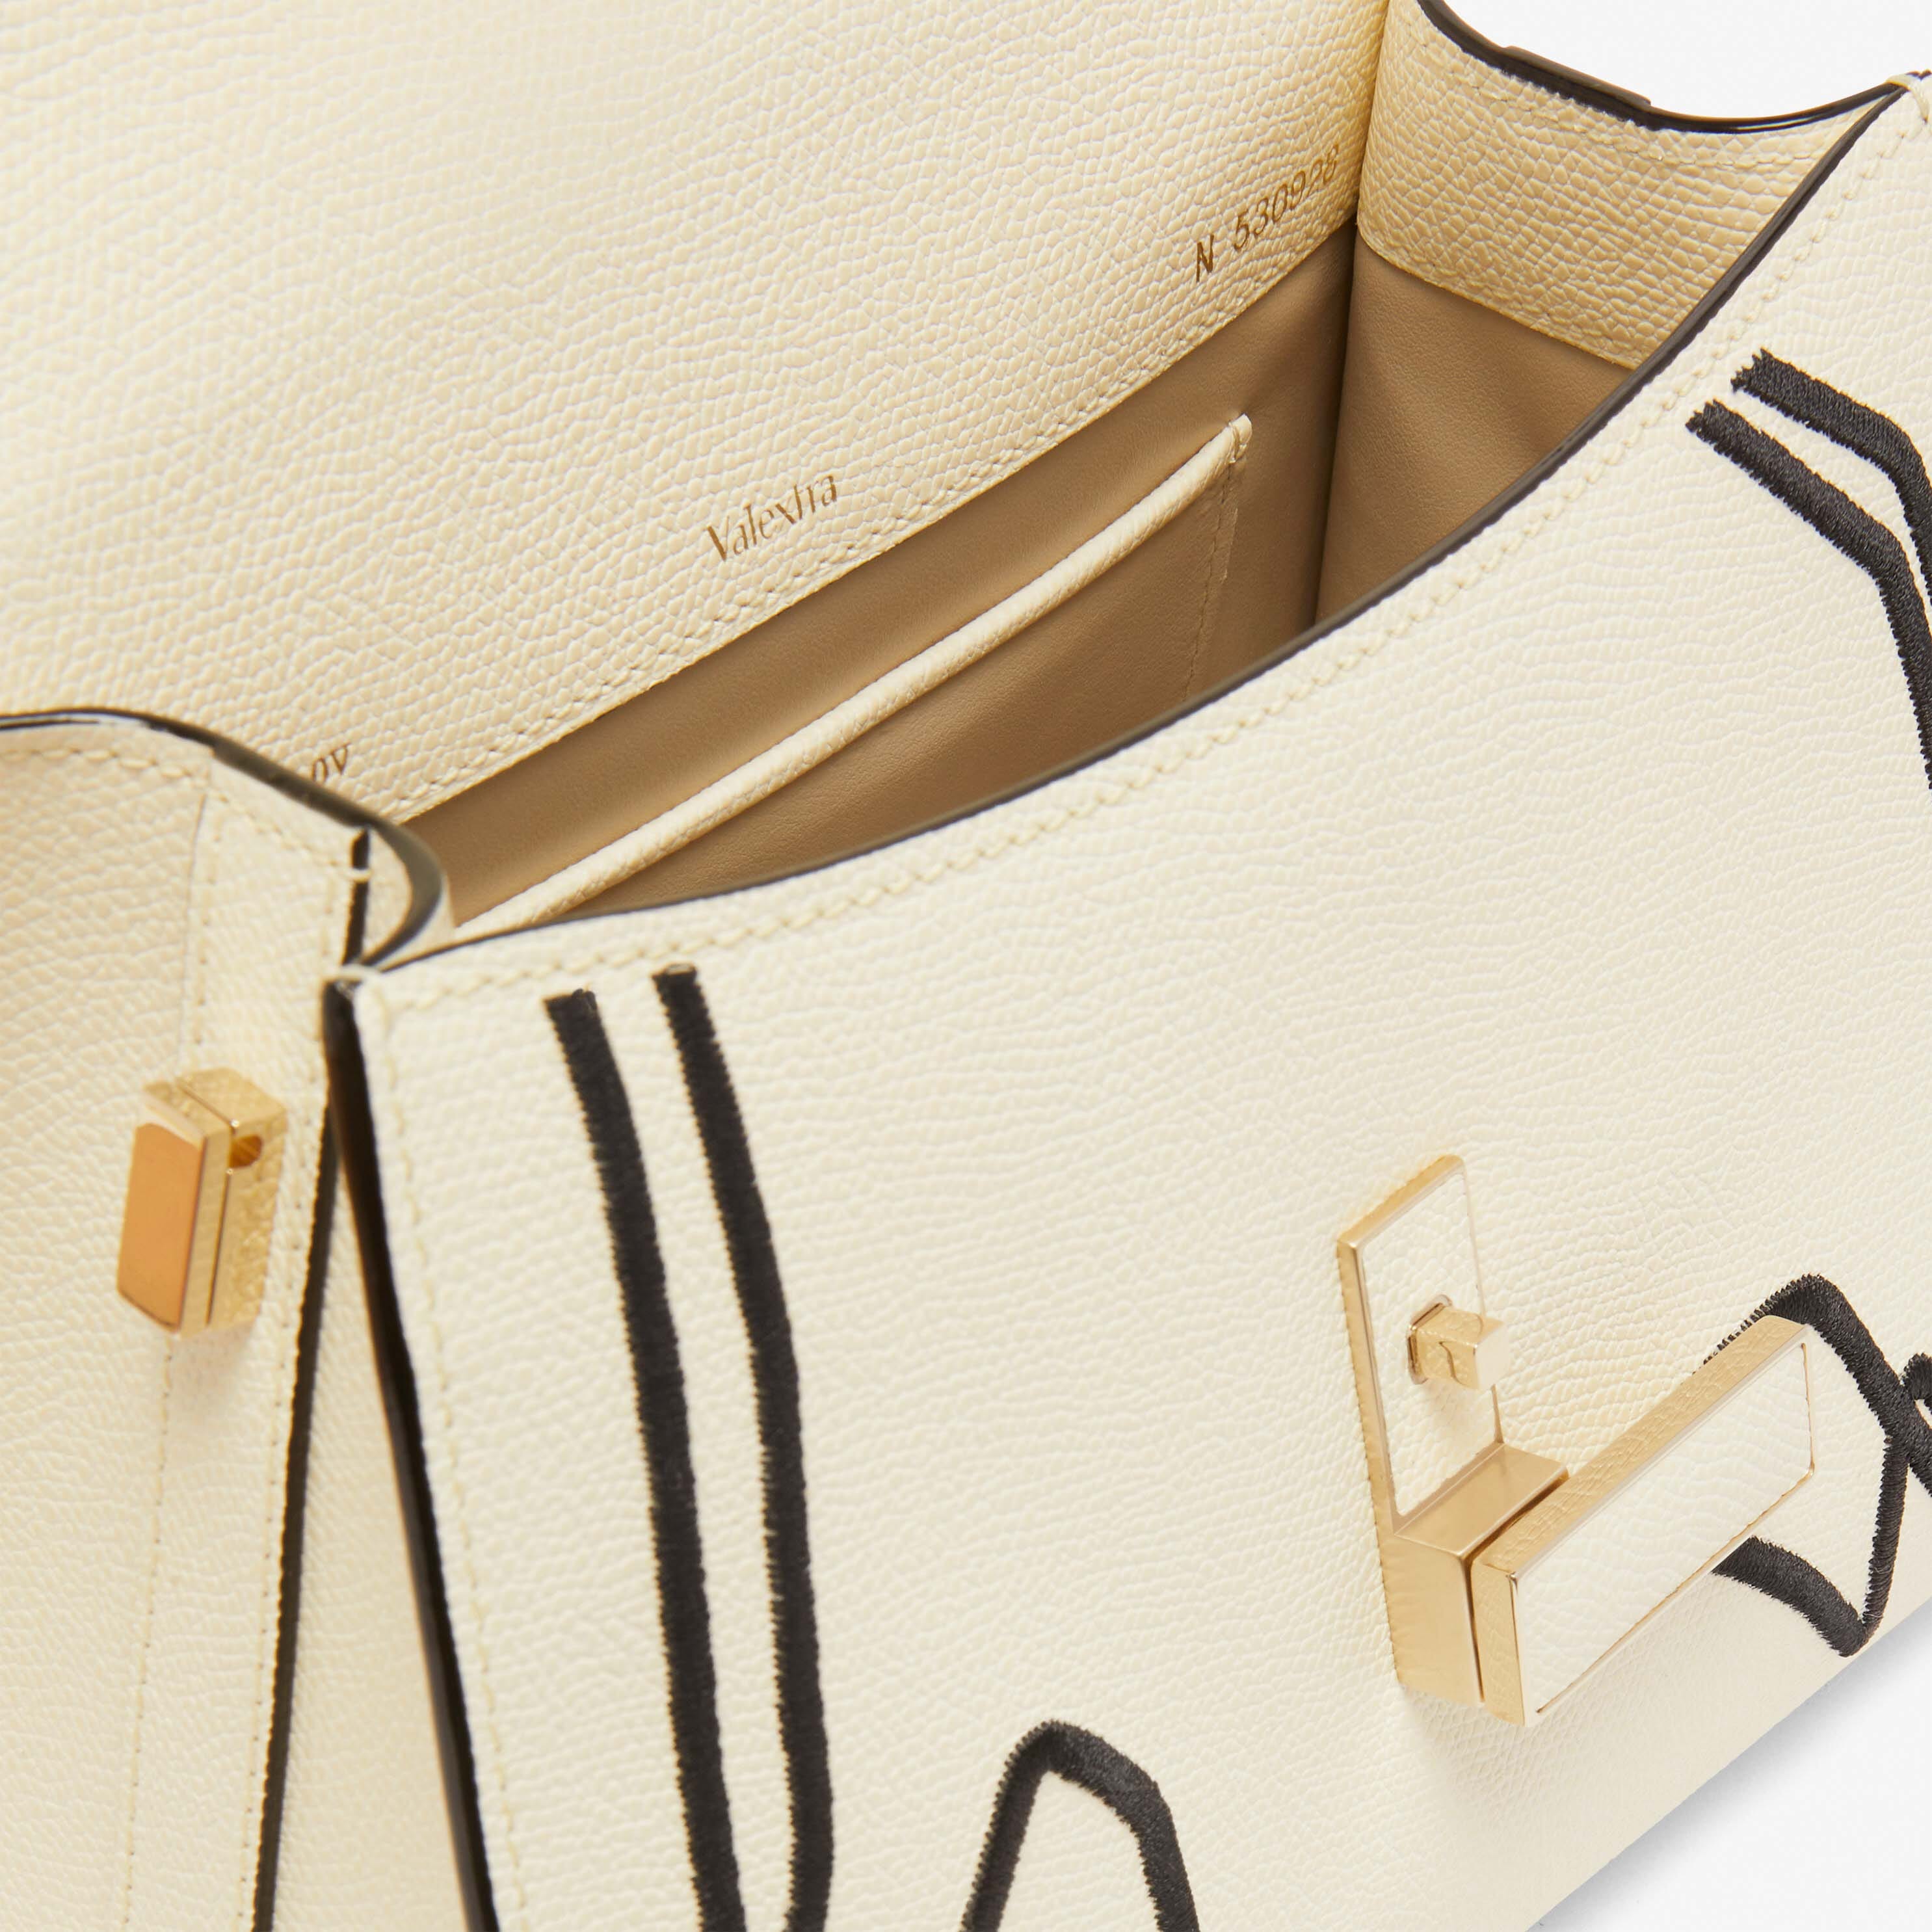 Iside Pansy Embroidery top handle mini bag - Pergamena White/Black - Vitello VS-Ricamo Fiori - Valextra - 2